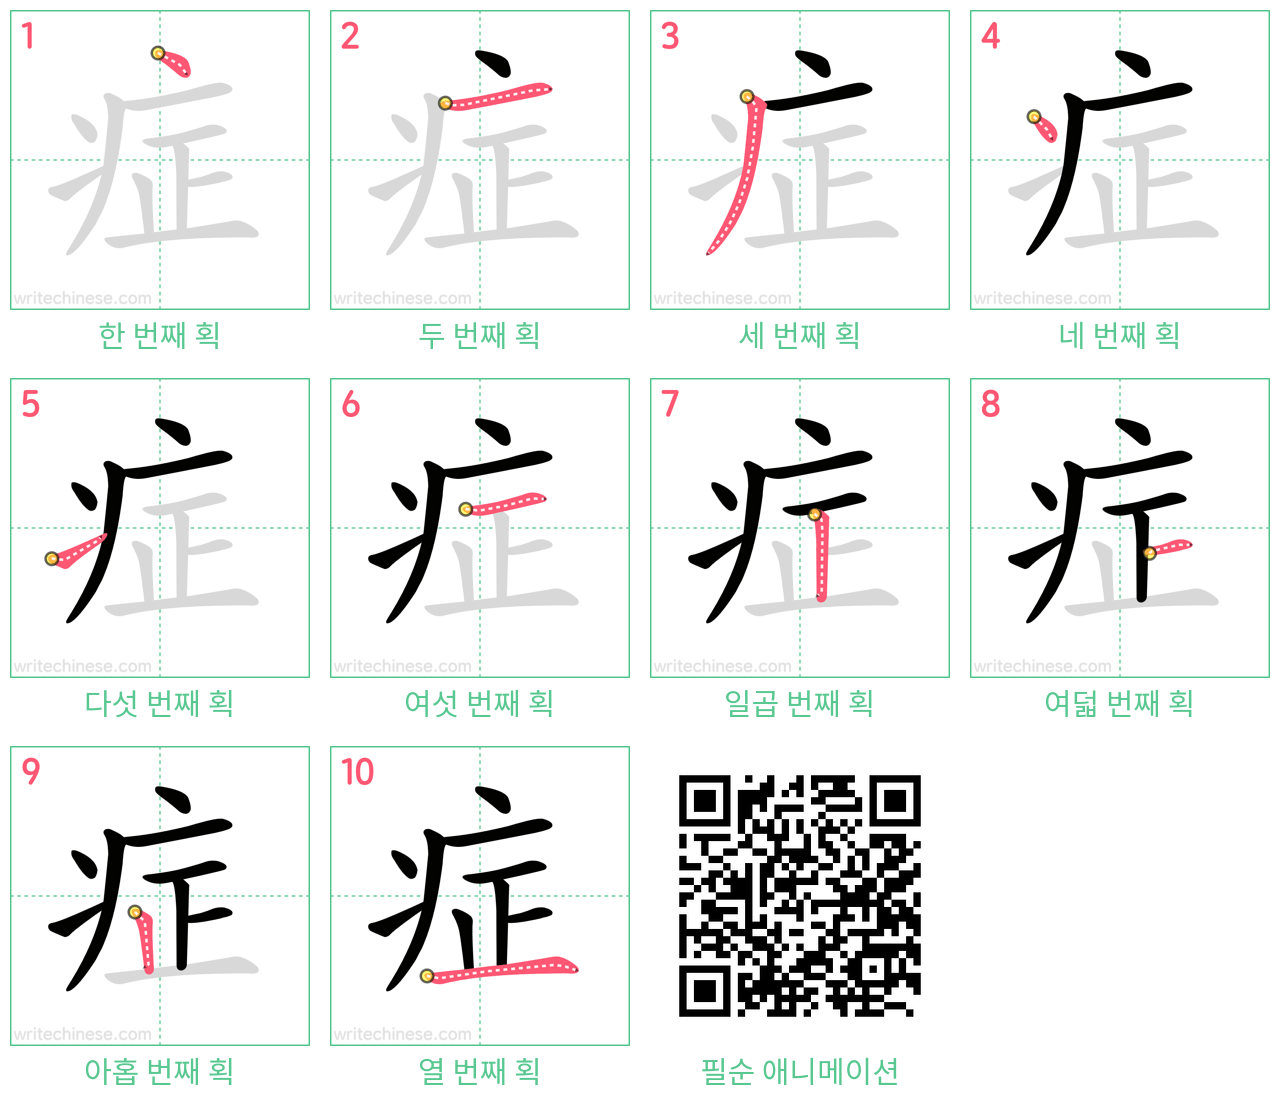 症 step-by-step stroke order diagrams